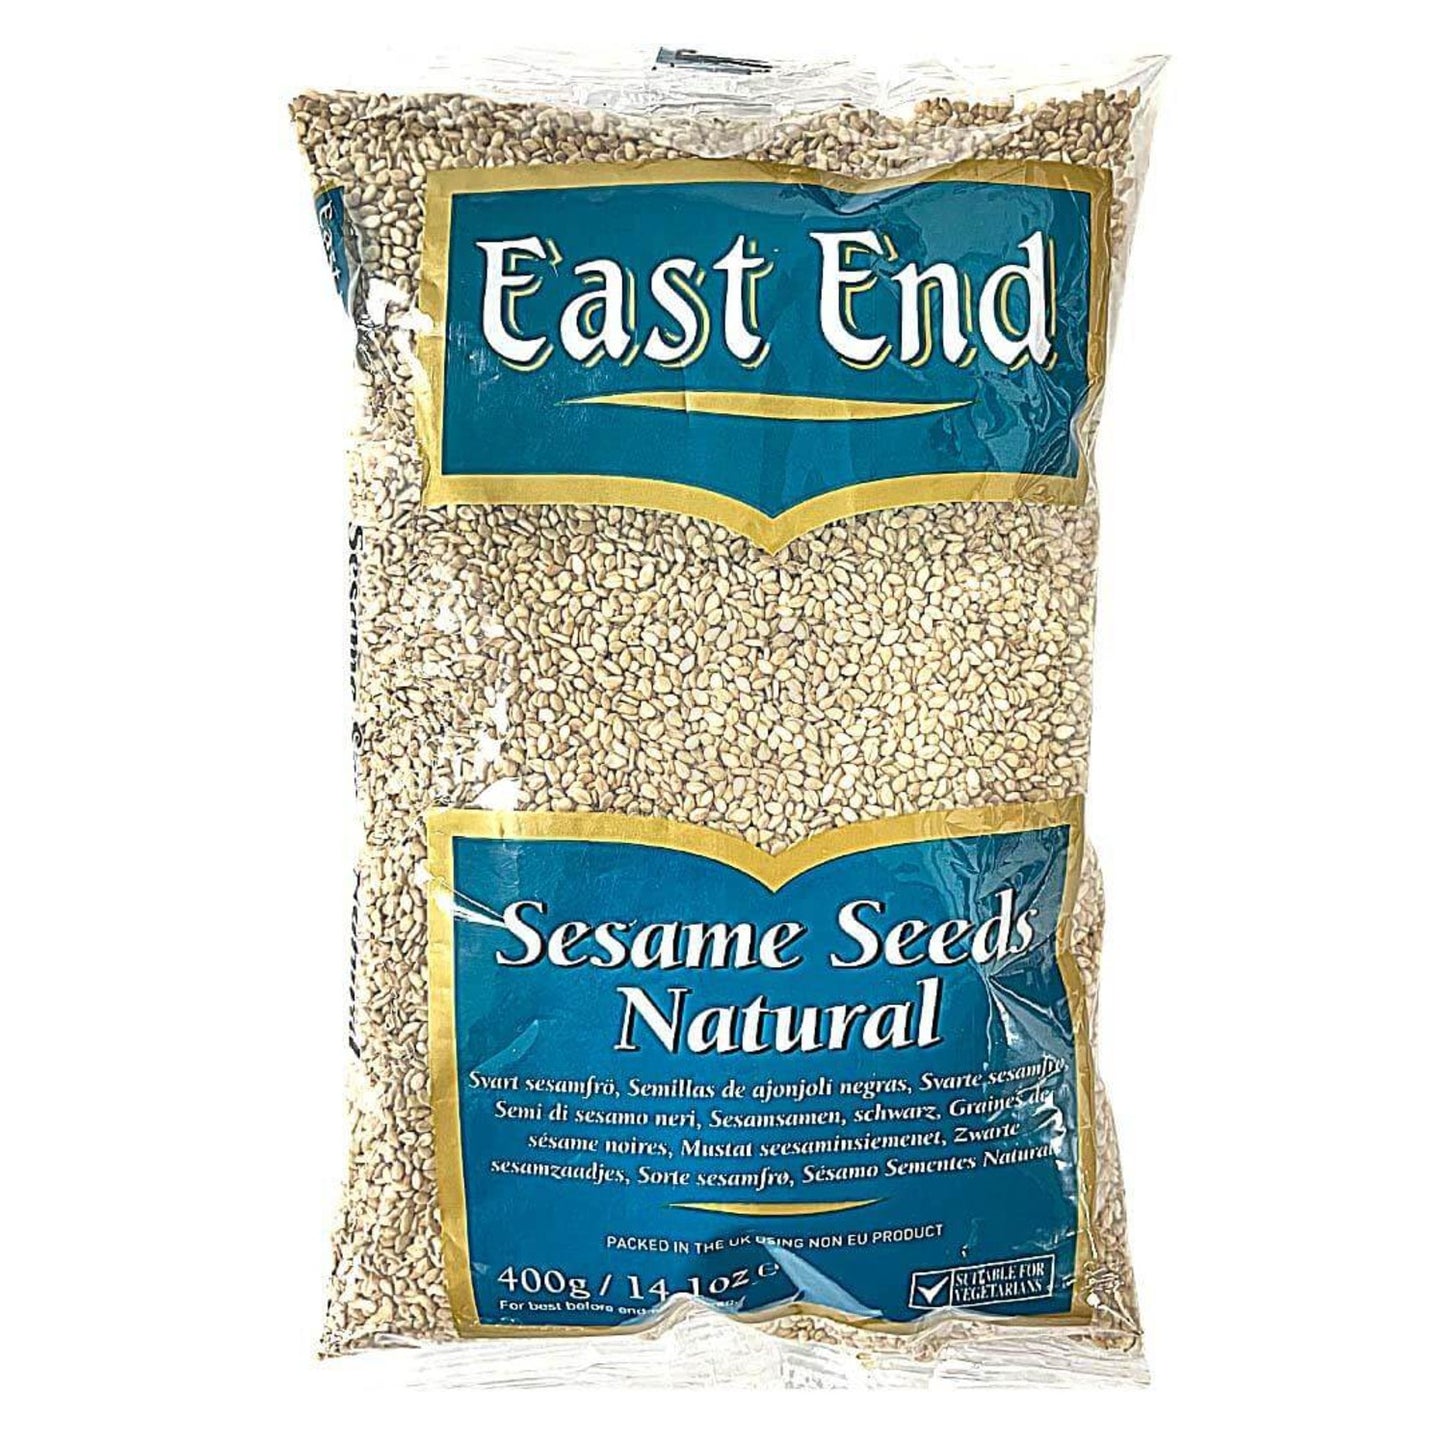 East End Till Seeds (Natural Sesame Seeds) 400g